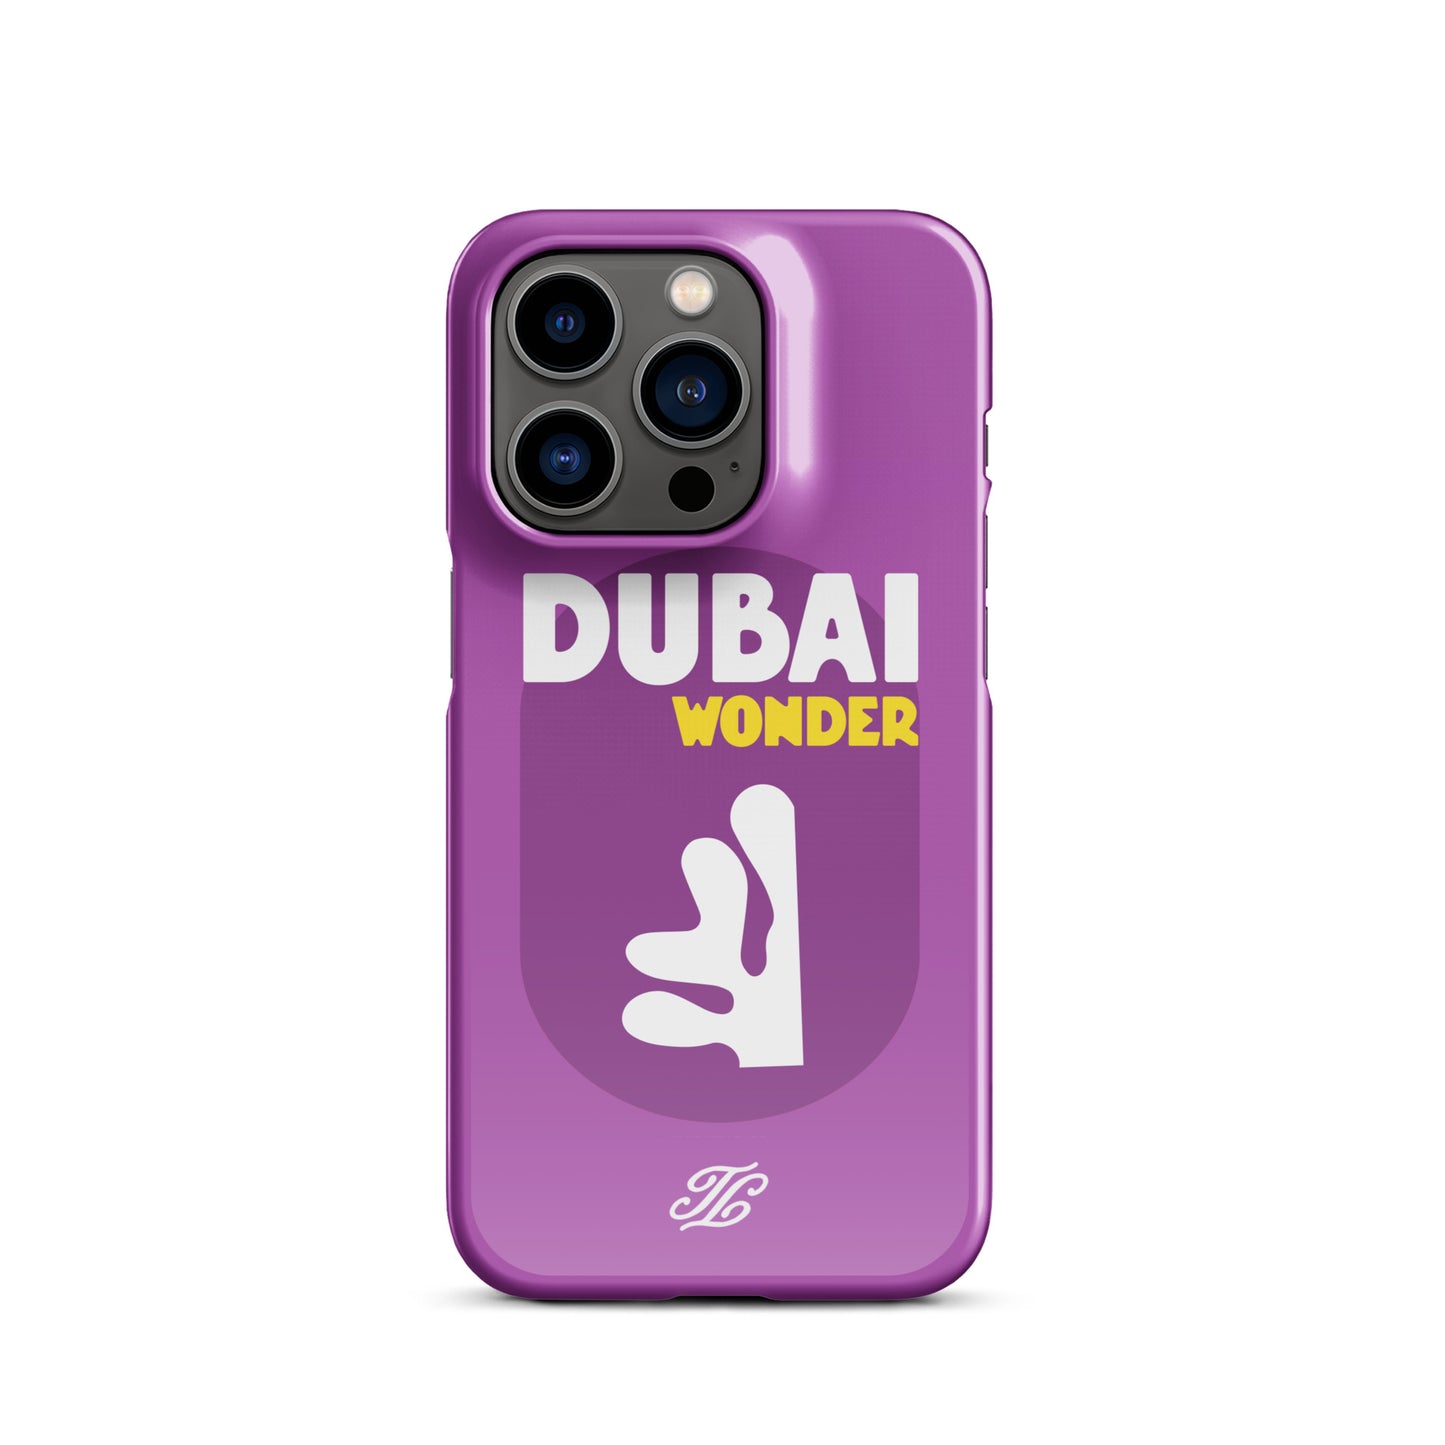 Dubai iPhone® case